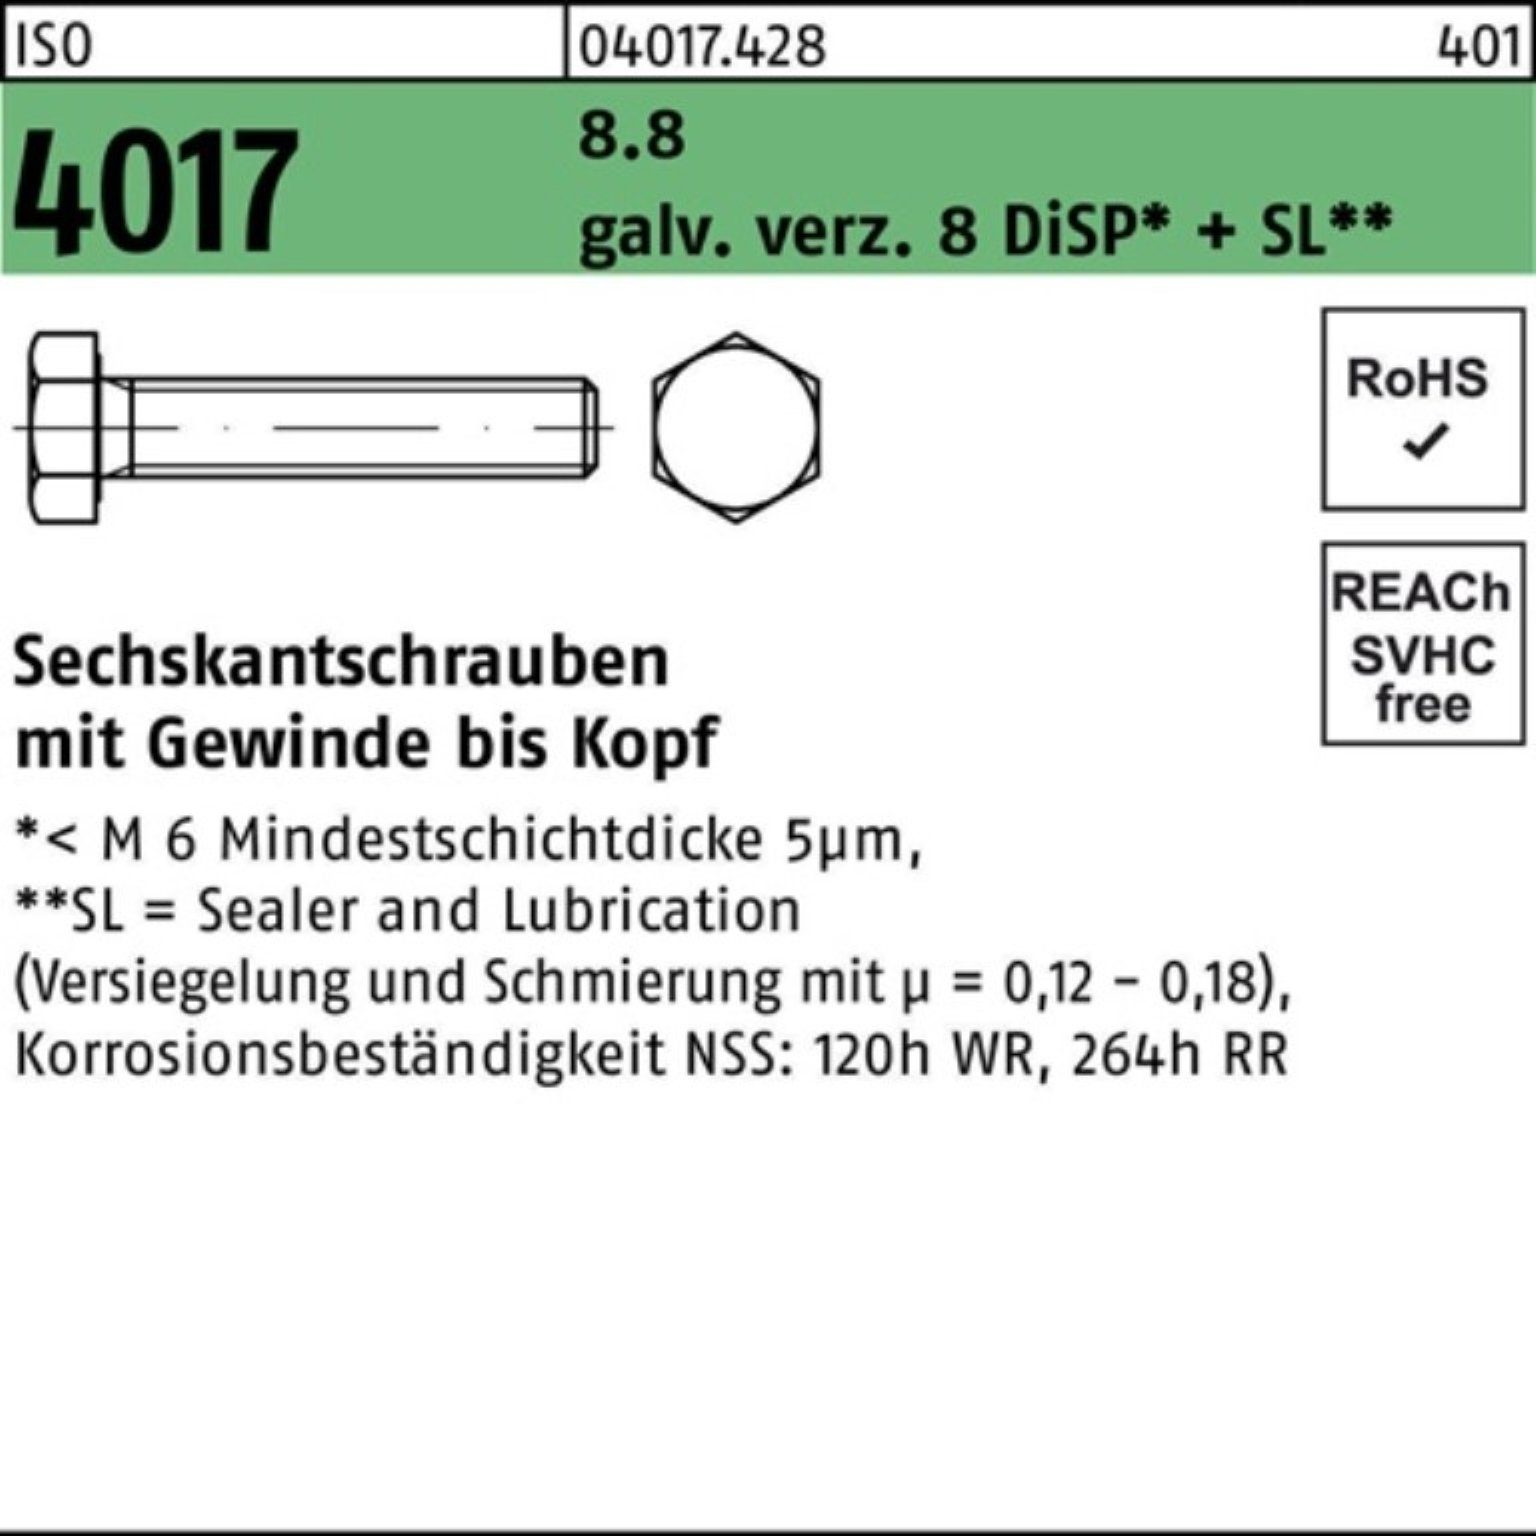 8 DiSP+ Bufab Pack ISO 4017 8.8 Sechskantschraube galv.verz. VG Sechskantschraube 90 100er M8x